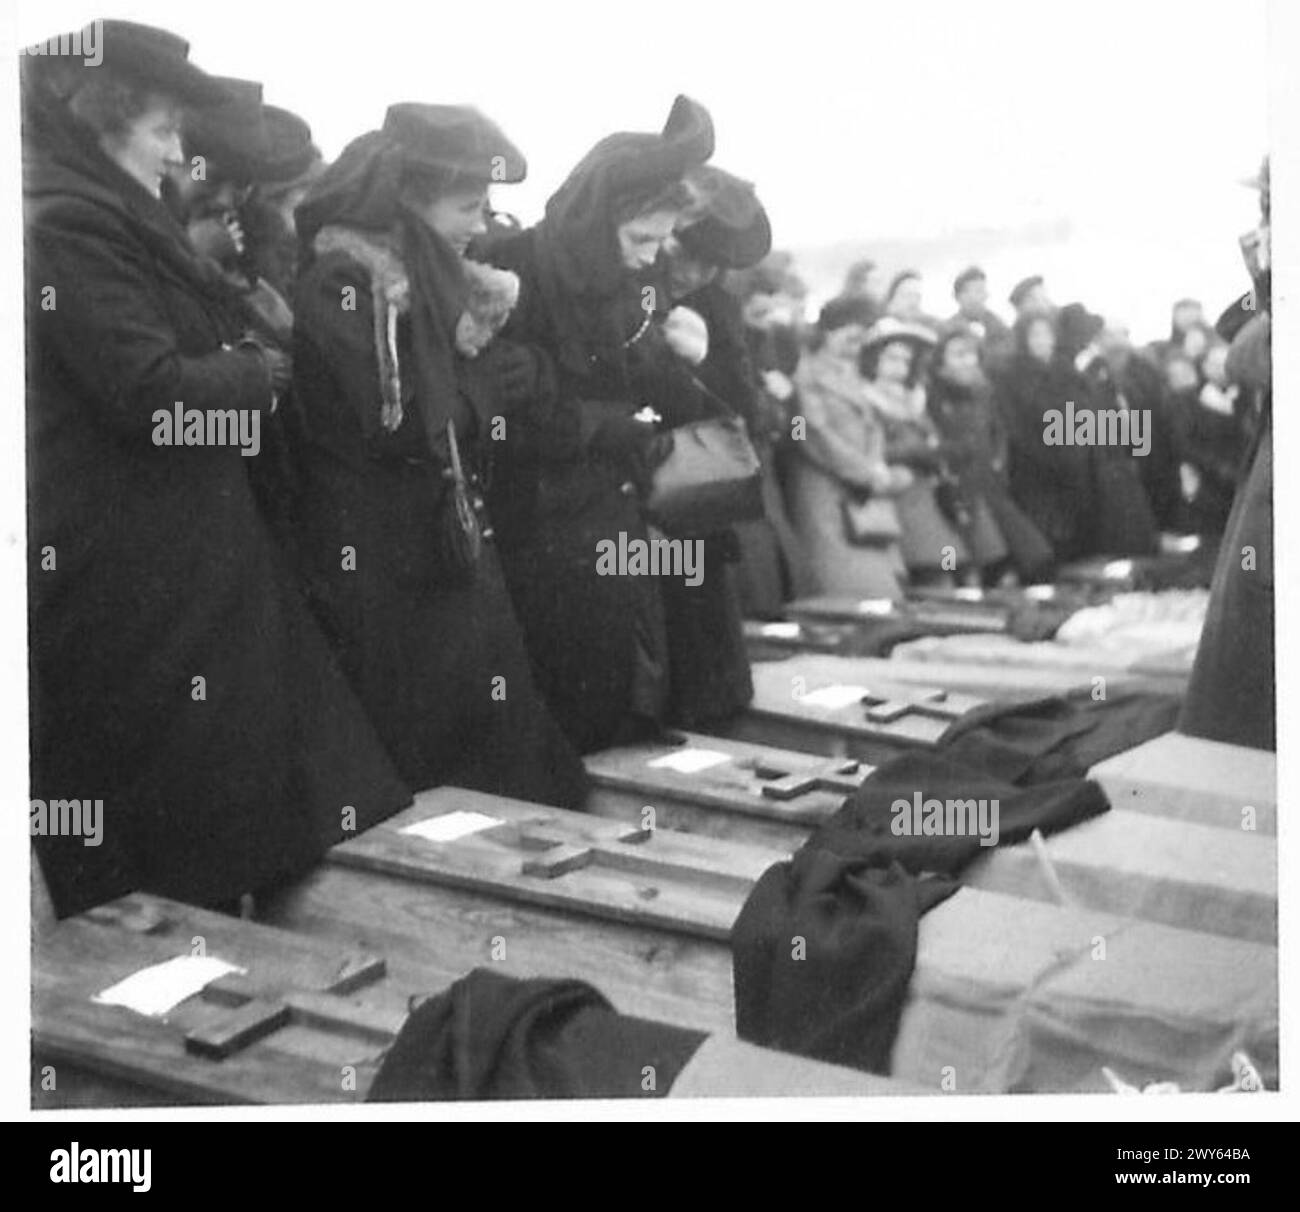 FUNERALE DELLE VITTIME della "BANDA" - immagini delle persone in lutto, sopraffatte dall'emozione mentre i loro cari vengono abbassati a terra. , British Army, 21st Army Group Foto Stock